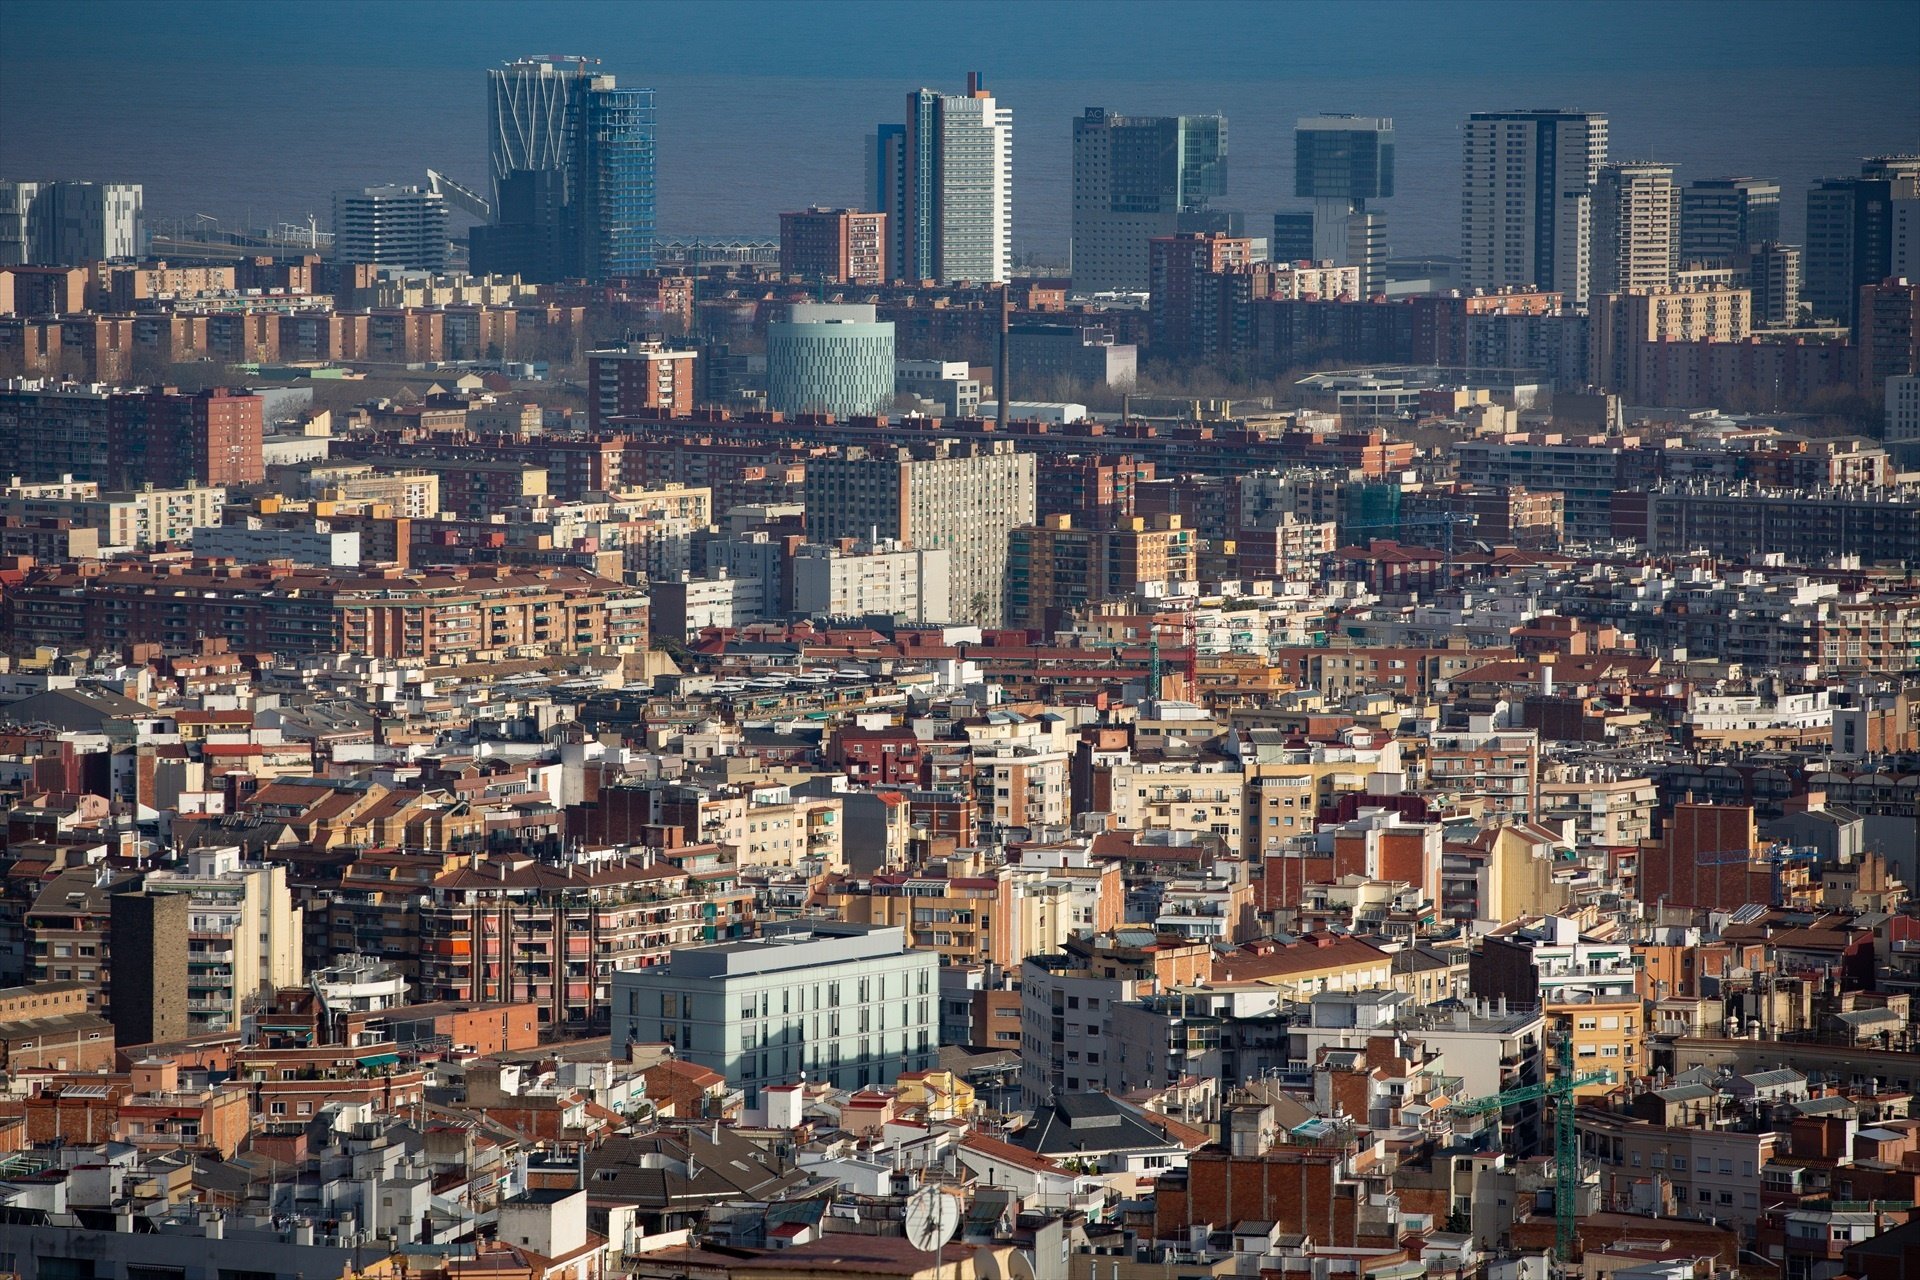 Barcelona plantea a la Generalitat poder extinguir las licencias de los pisos turísticos